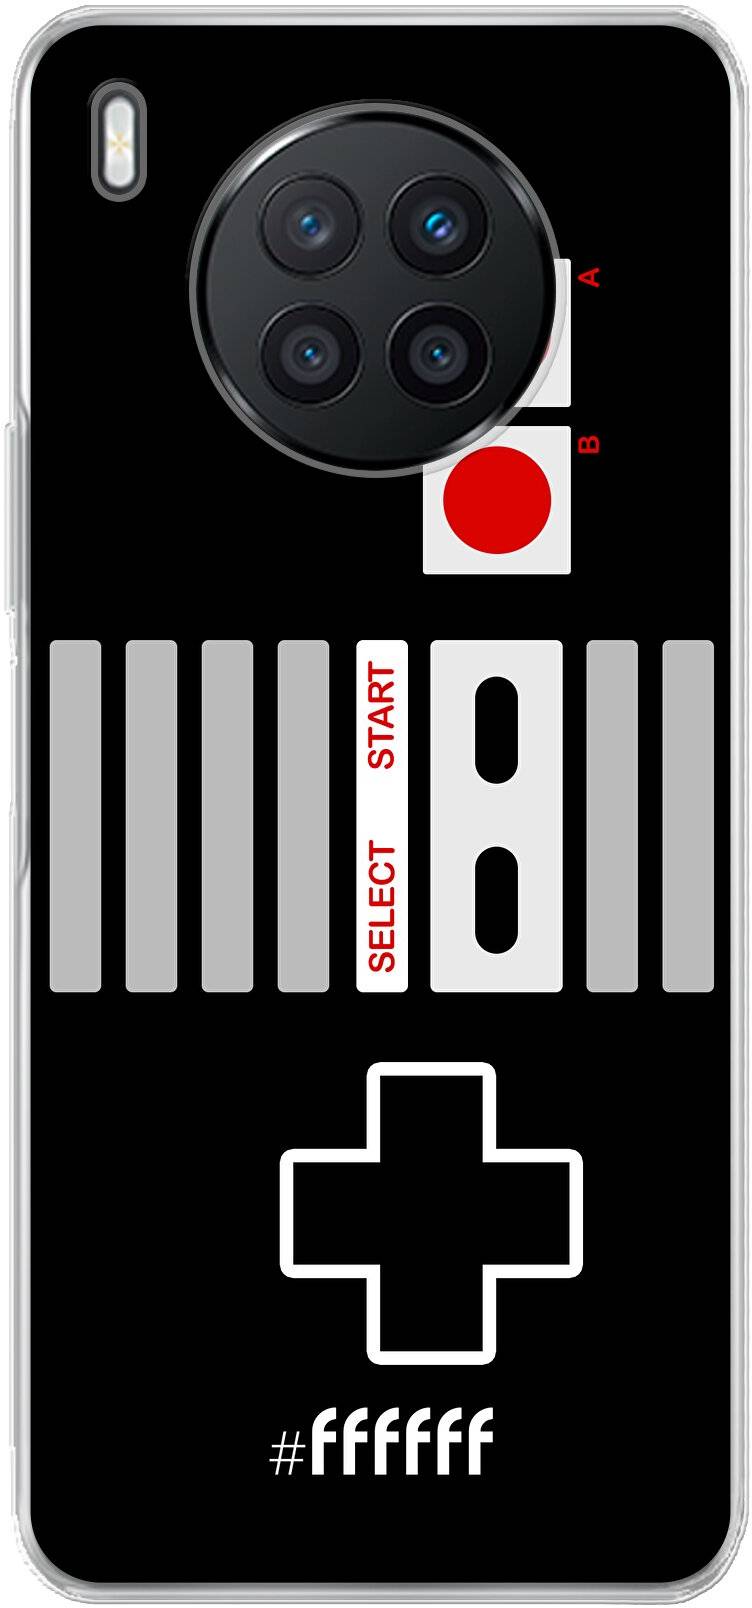 NES Controller Nova 8i